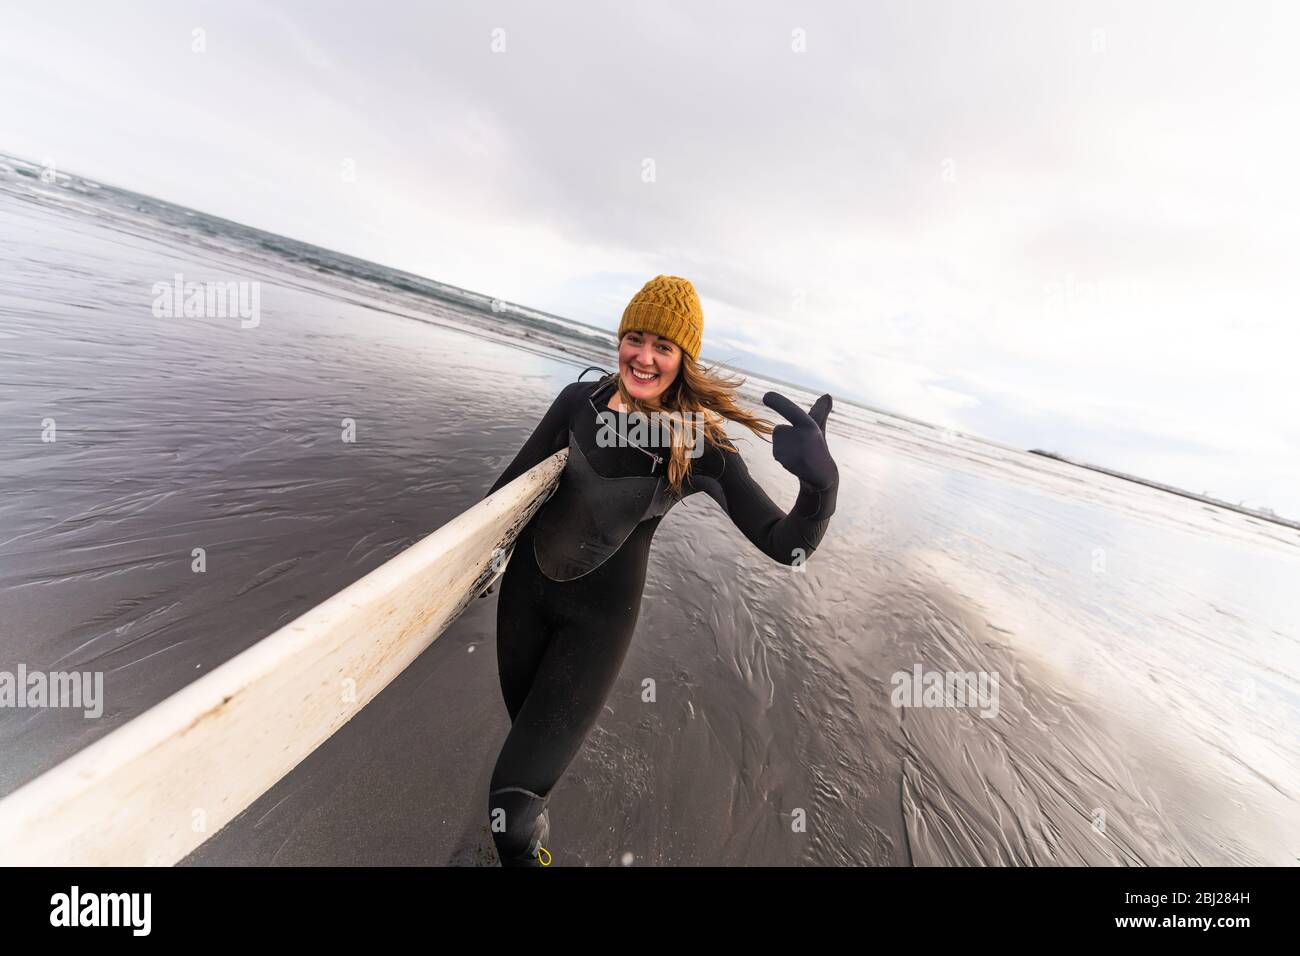 Une femme portant une combinaison et portant une planche de surf marchant  sur une plage noire avec la mer en arrière-plan Photo Stock - Alamy